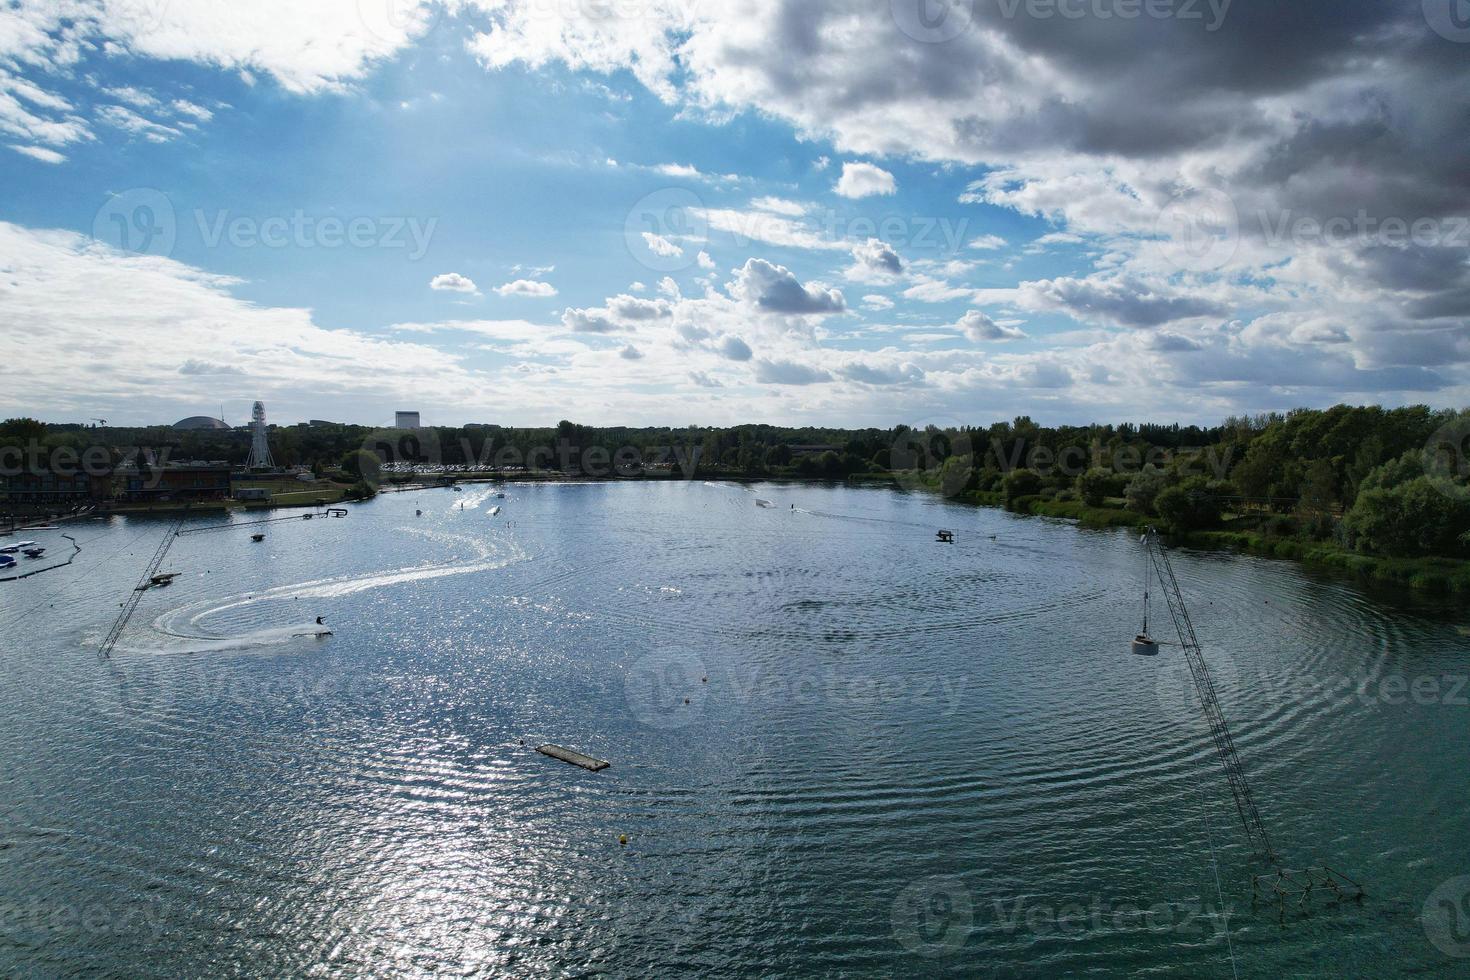 belas imagens da câmera do drone aéreo de willen lake and park, localizado em milton keynes, inglaterra. as pessoas estão desfrutando no lago em um dia quente e ensolarado de verão foto